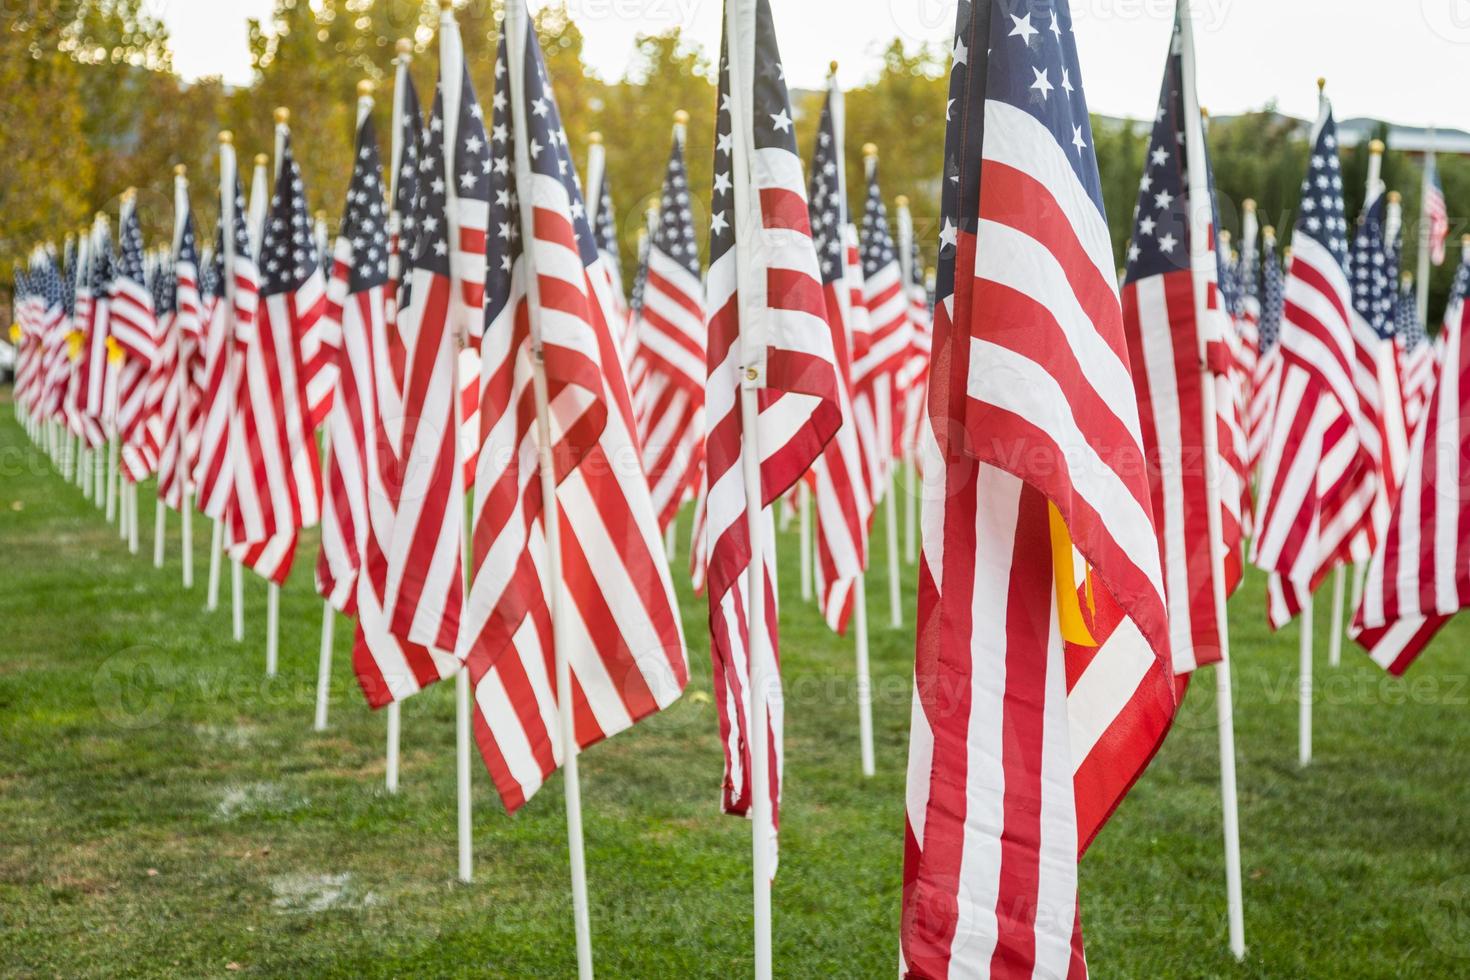 champ de drapeaux américains de la journée des anciens combattants agitant dans la brise. photo